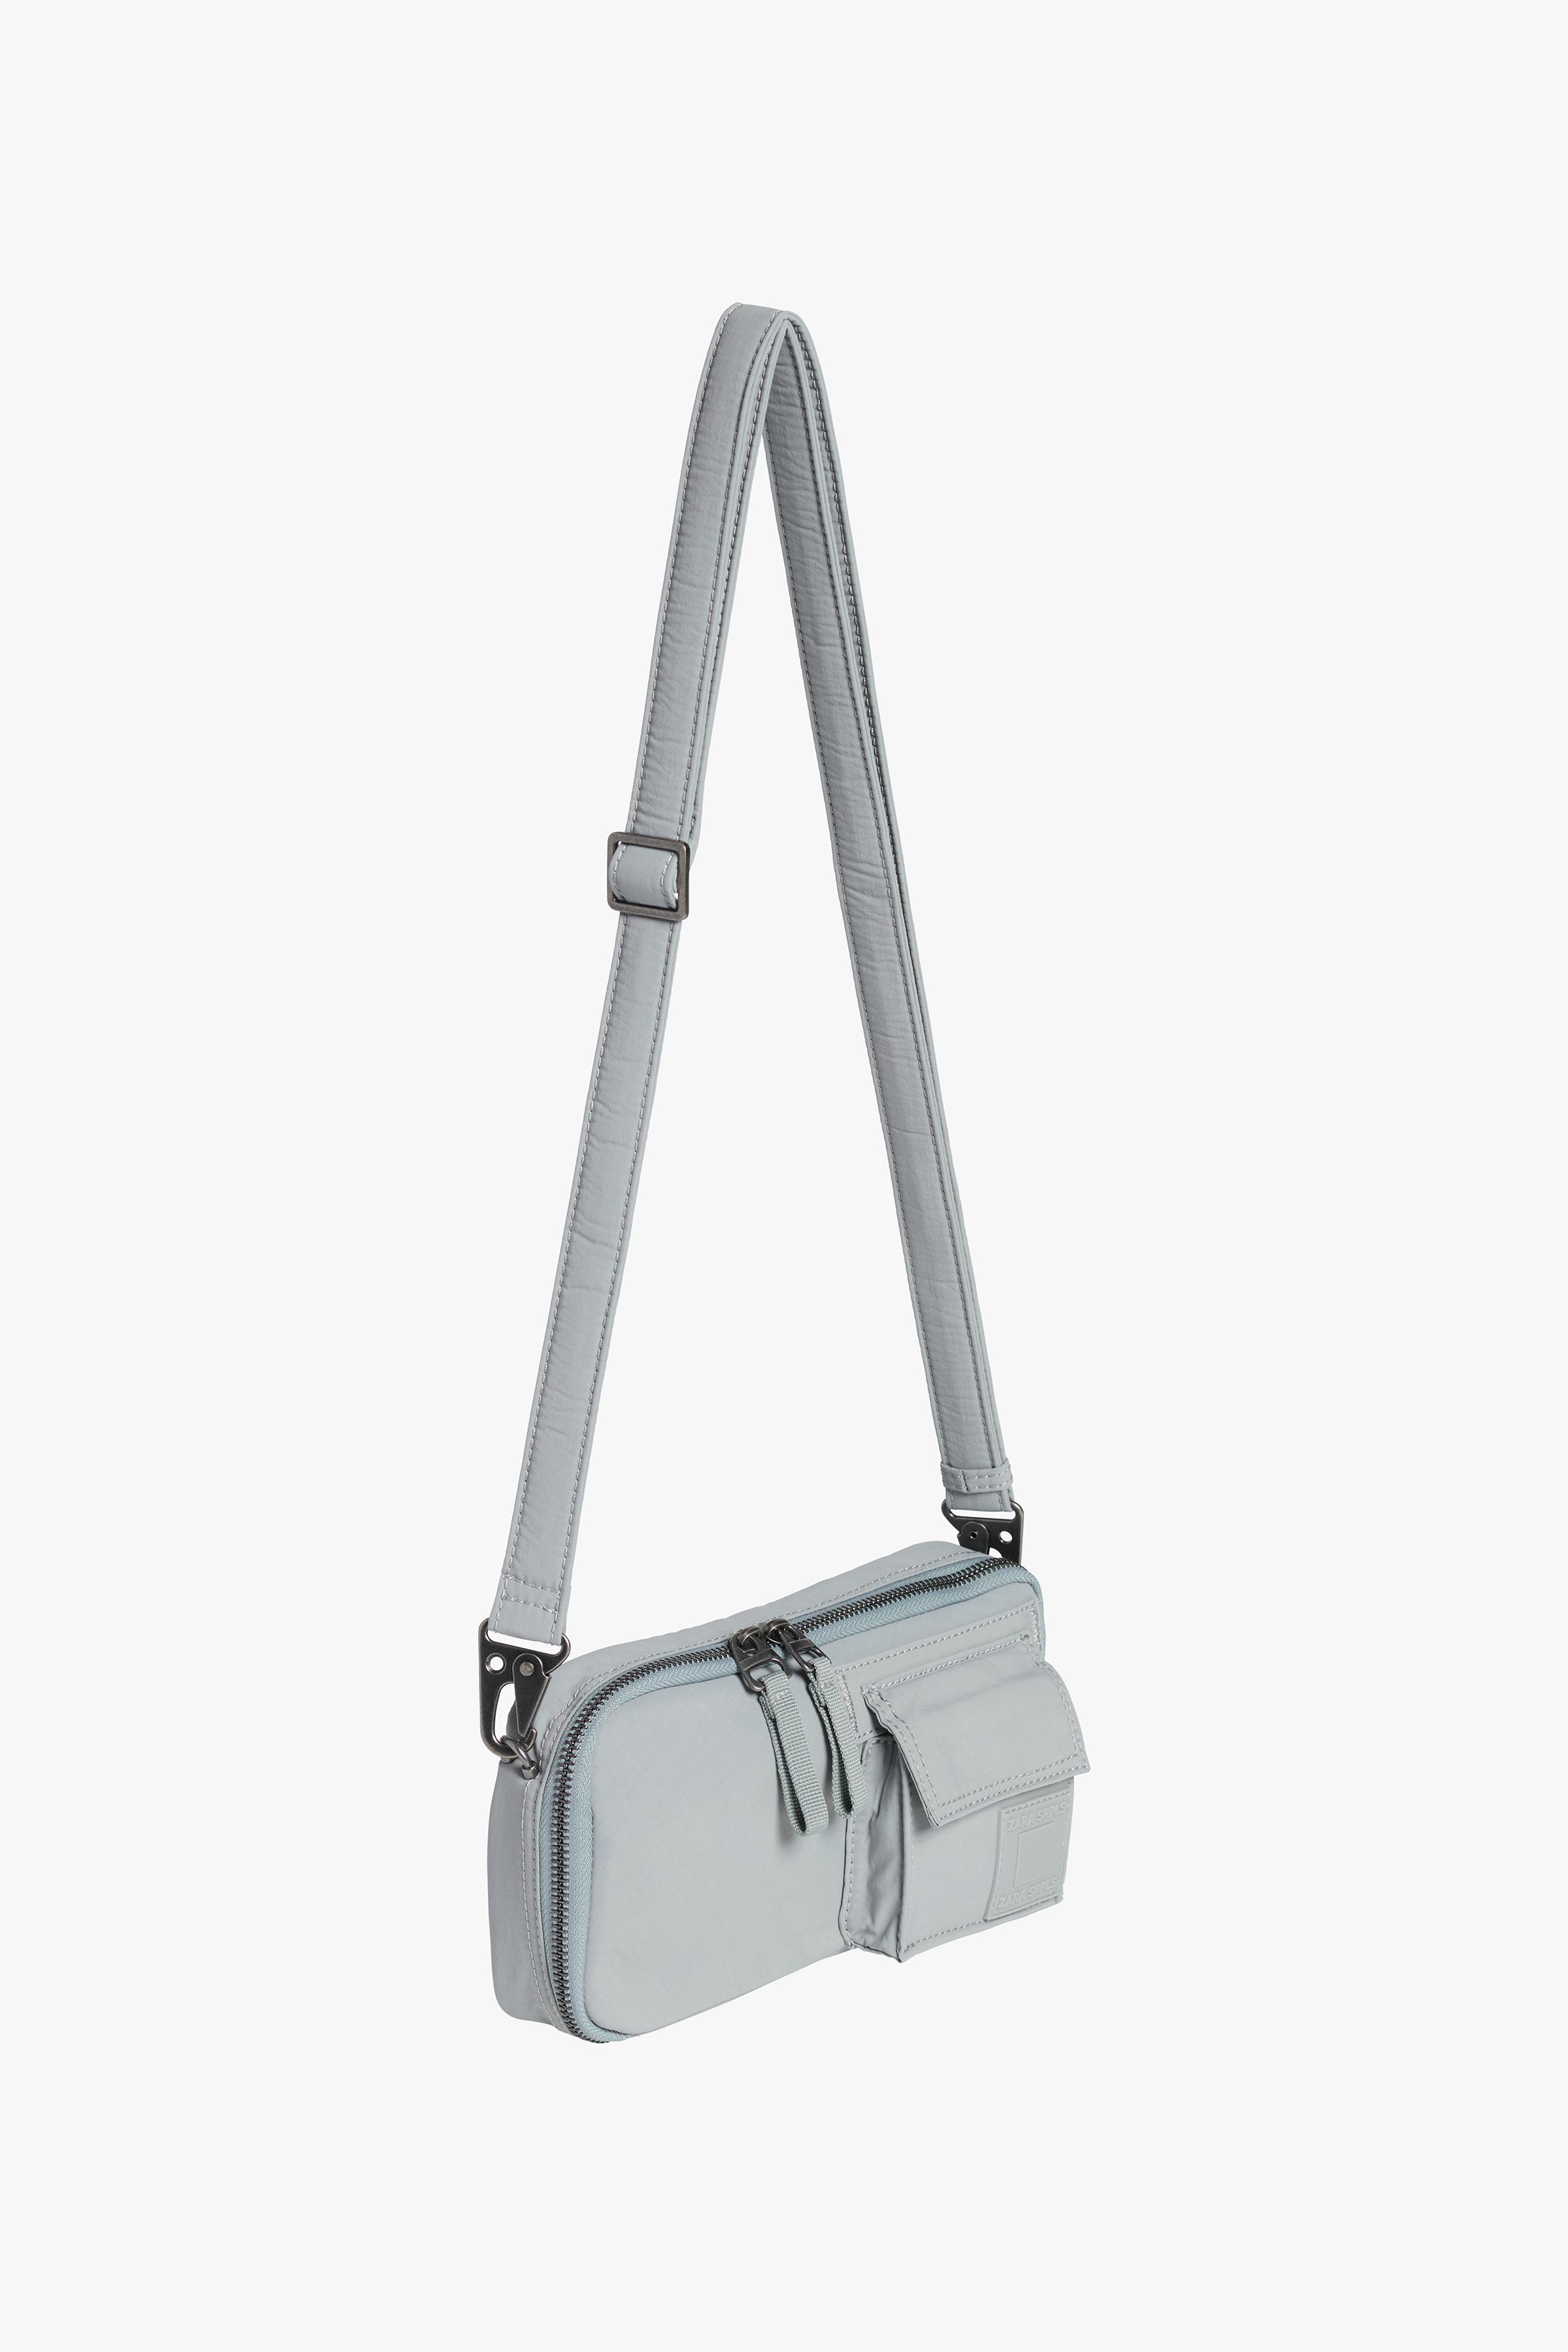 Прямоугольная сумка через плечо мягкого дизайна ZARA, голубое небо прямоугольная сумка с круглыми ручками zara баклажановый